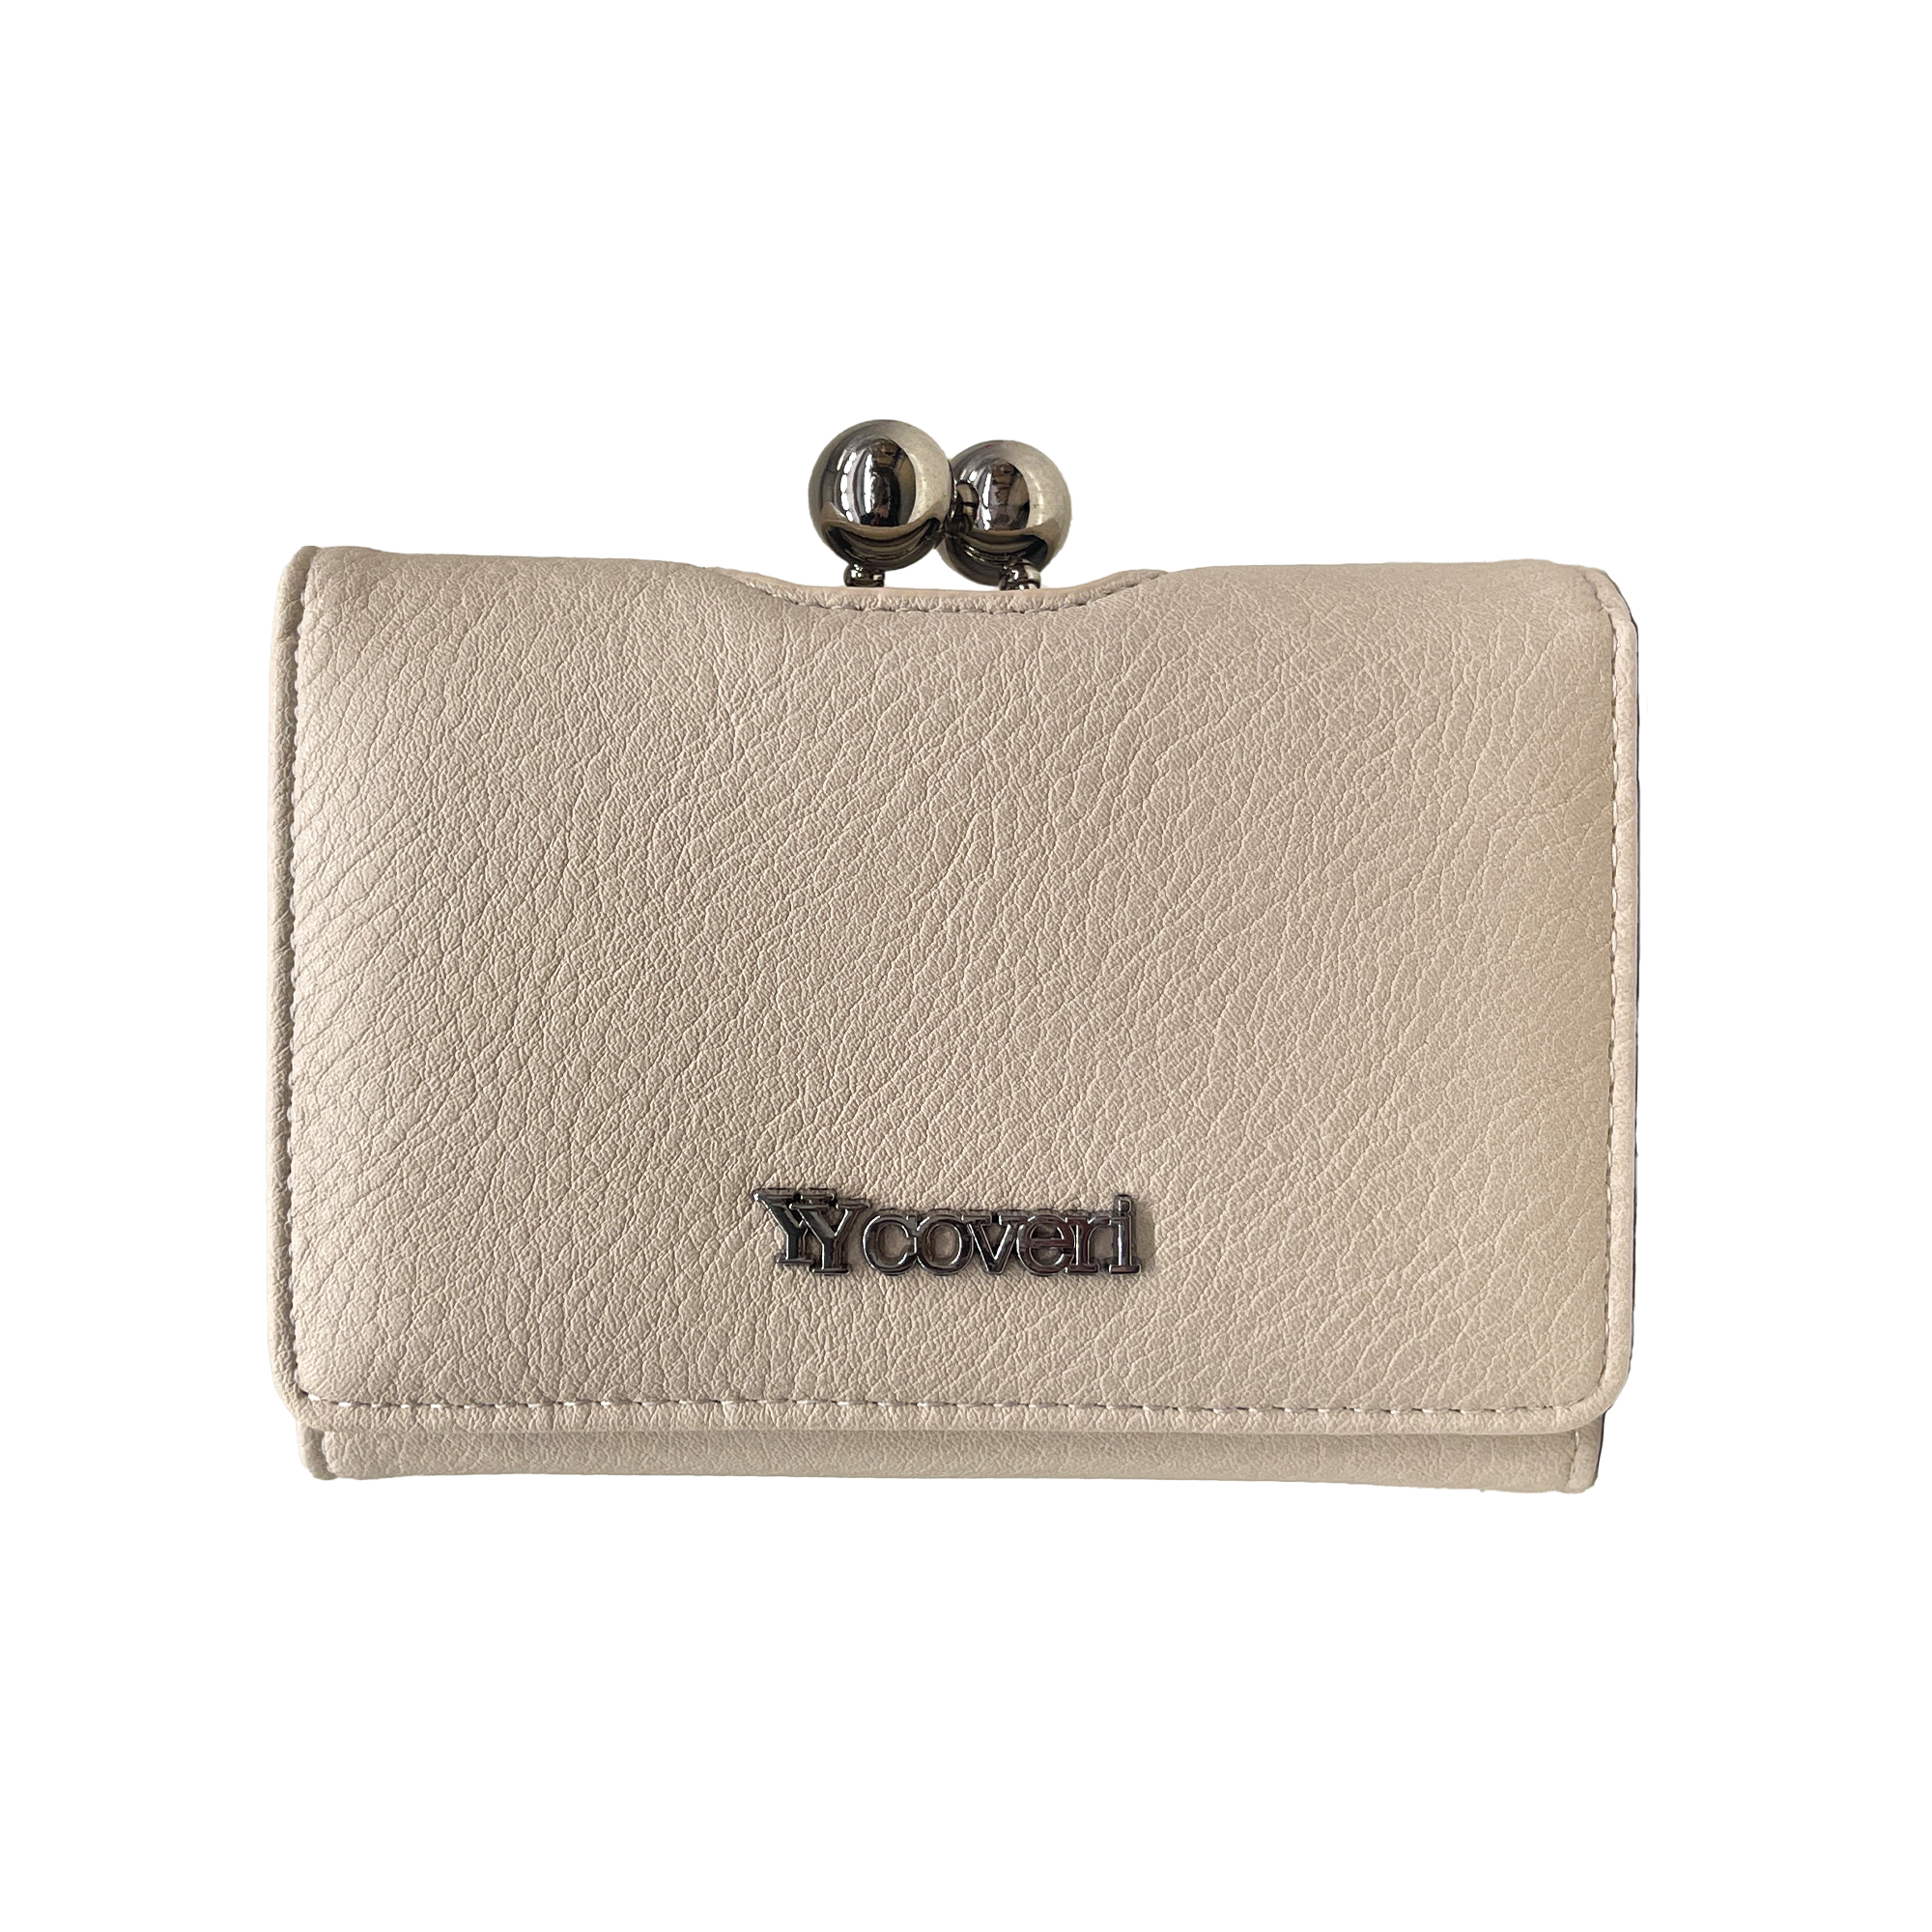 YY Coveri Dámská peněženka 13.2x12x4cm CycJL803-1#